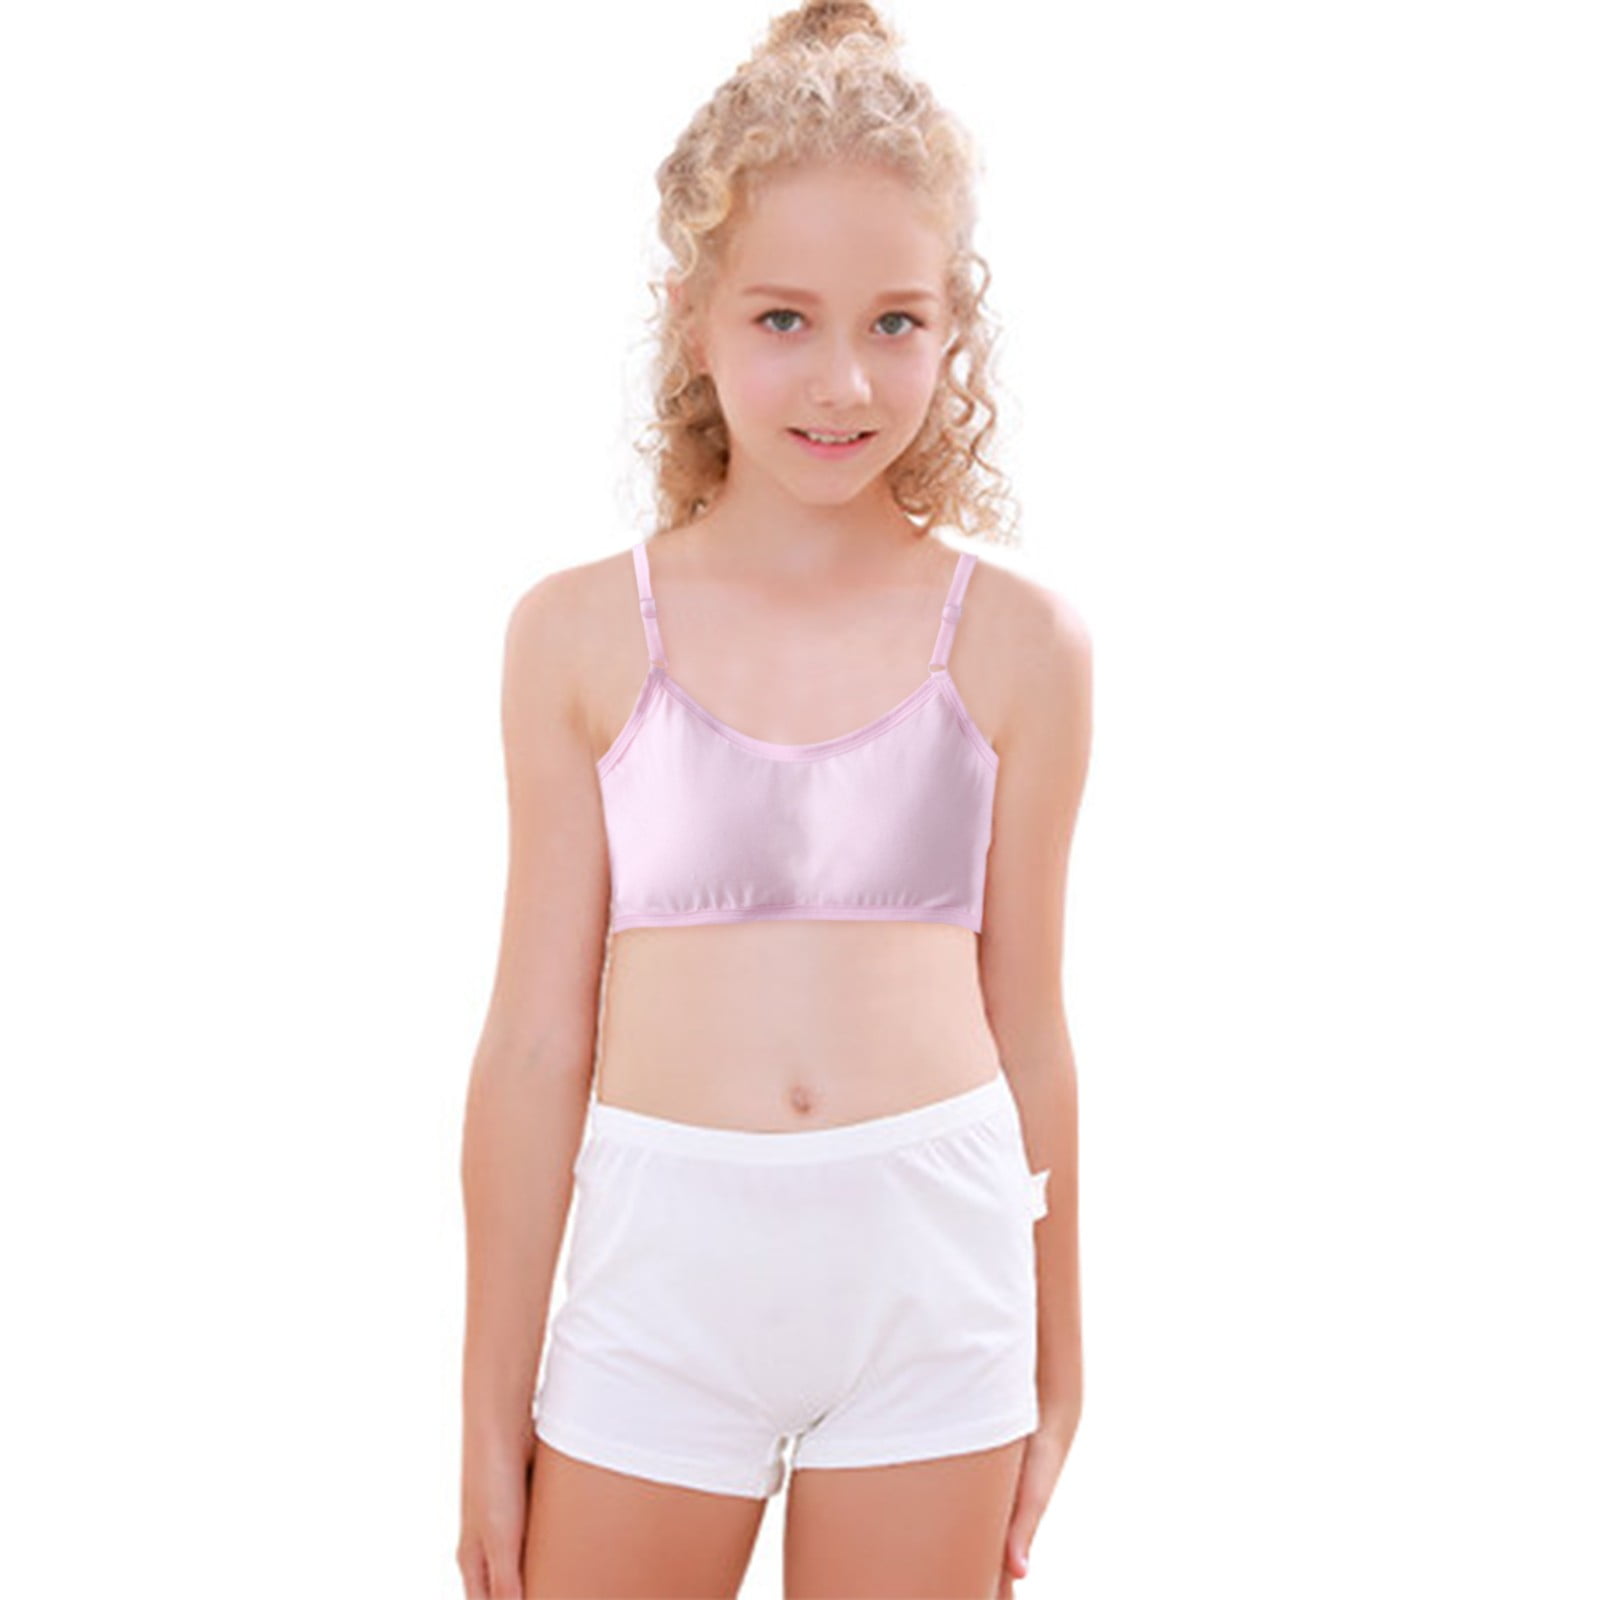 Girls Underwear Girls Students 10-16 Years Old Development Period Cotton  Camisole Vest Girls Bra Sports Bra - Training Bras - AliExpress